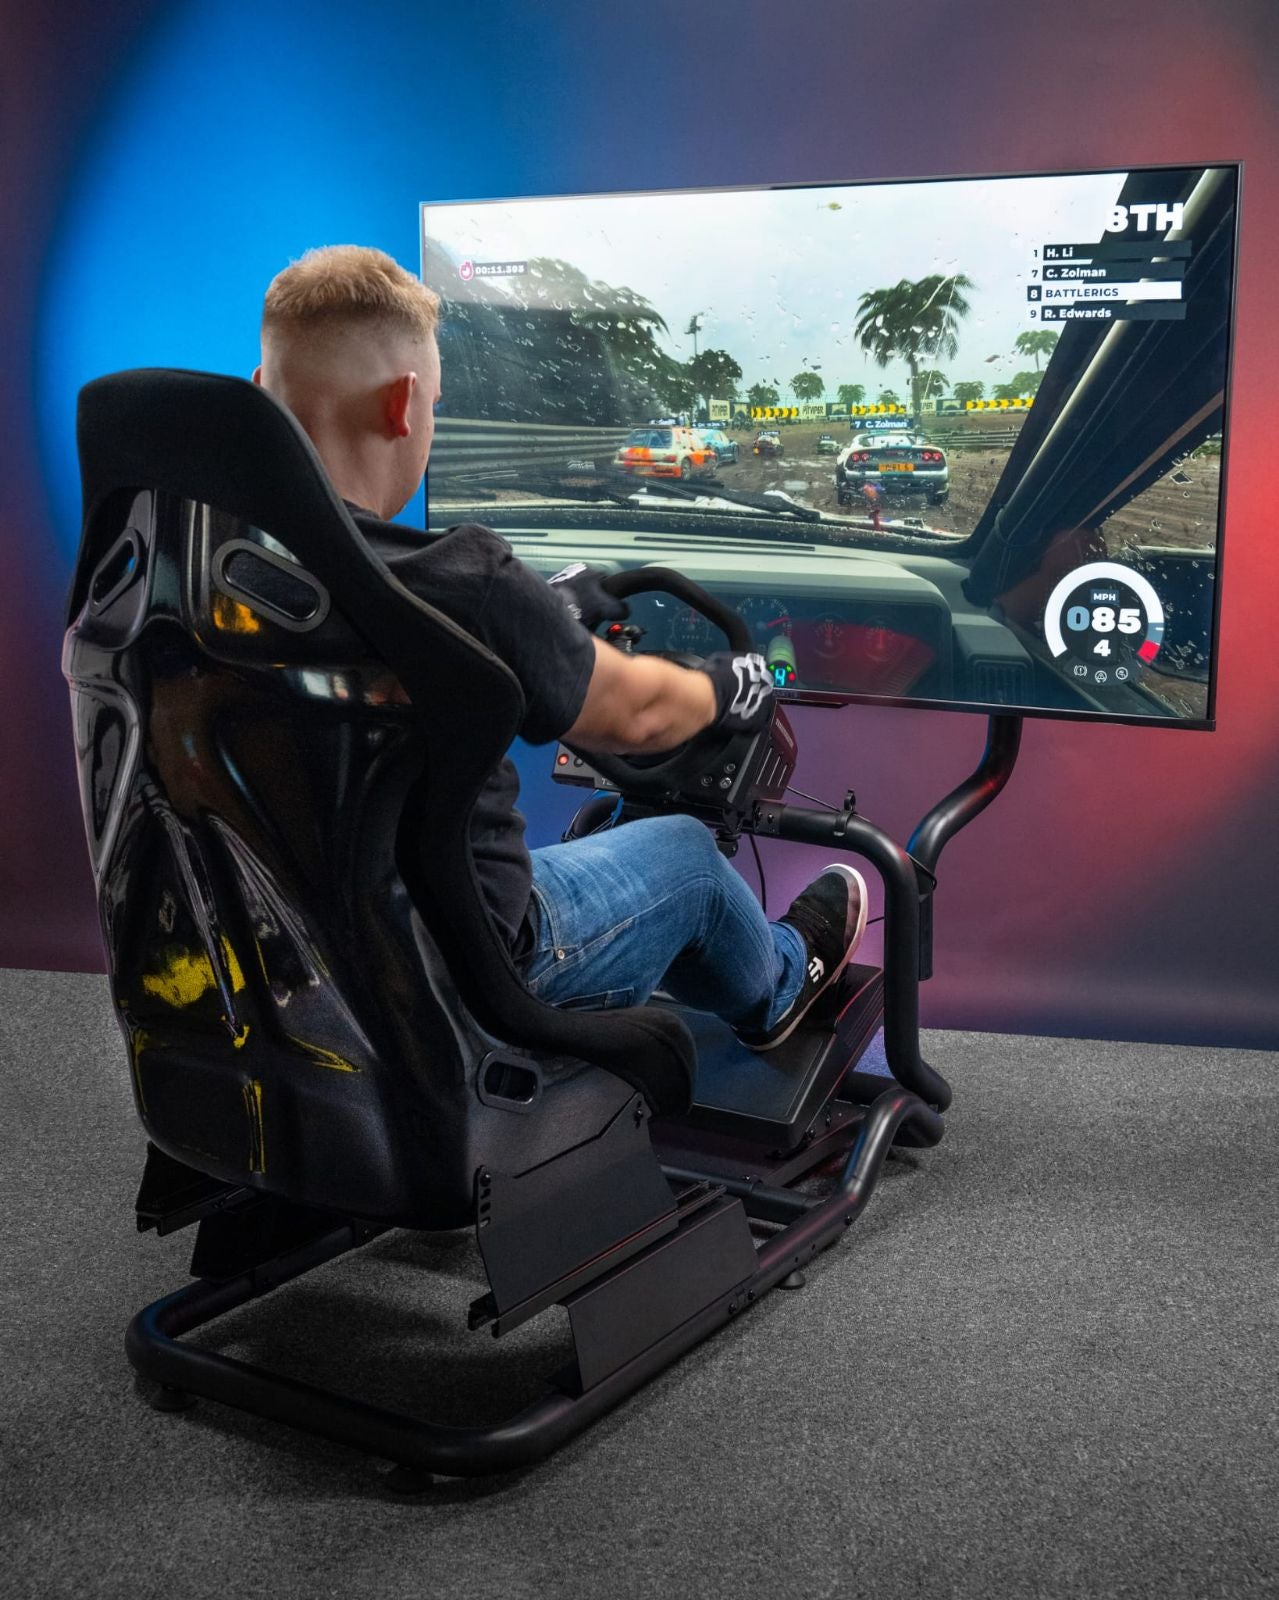 
                  
                    Downforce Racing Simulator
                  
                